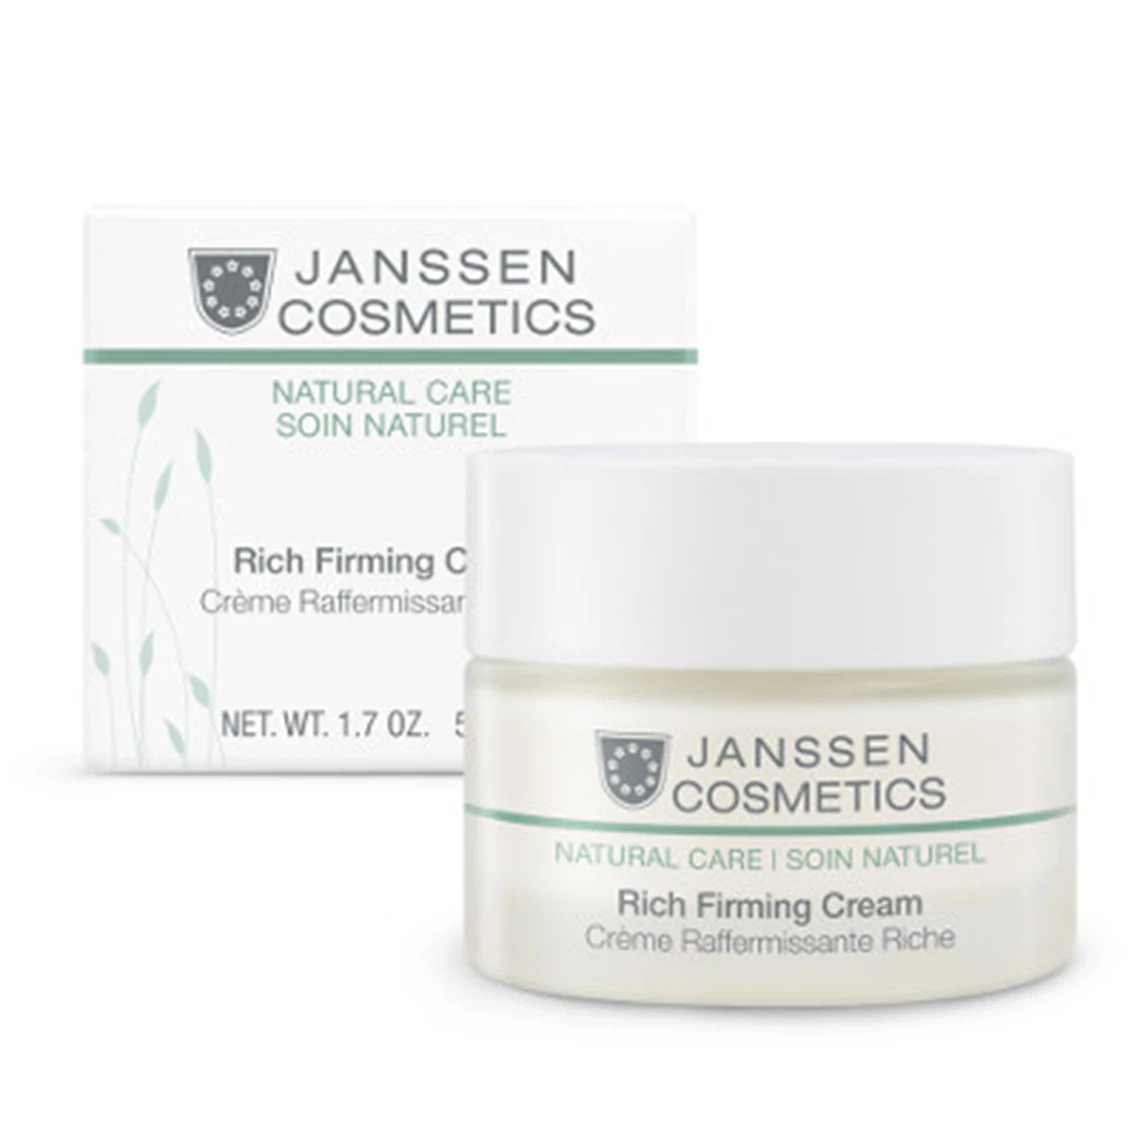 Rich Firming Cream by Janssen Cosmetics